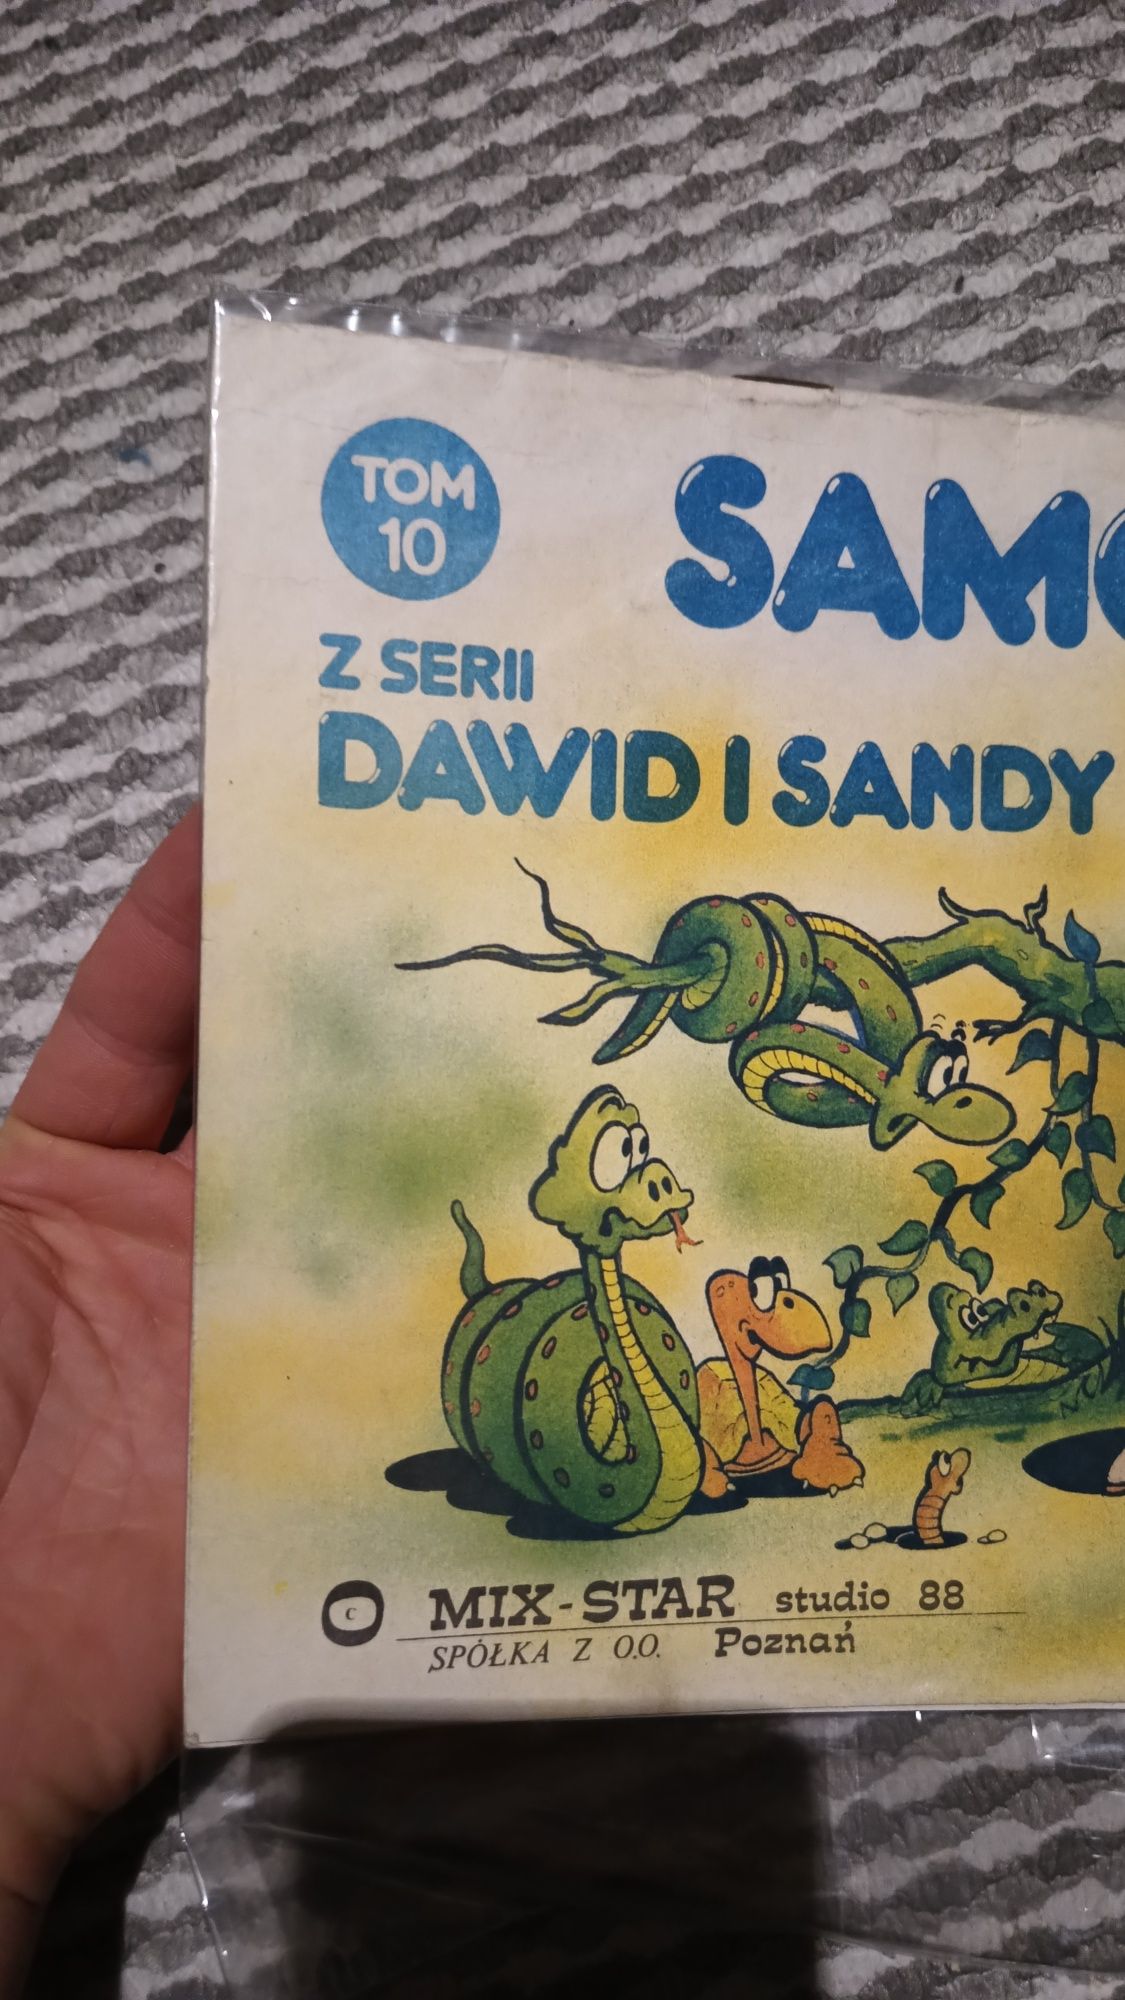 Komiks Dawid i Sandy, samotność, Tom 10, stan bdb